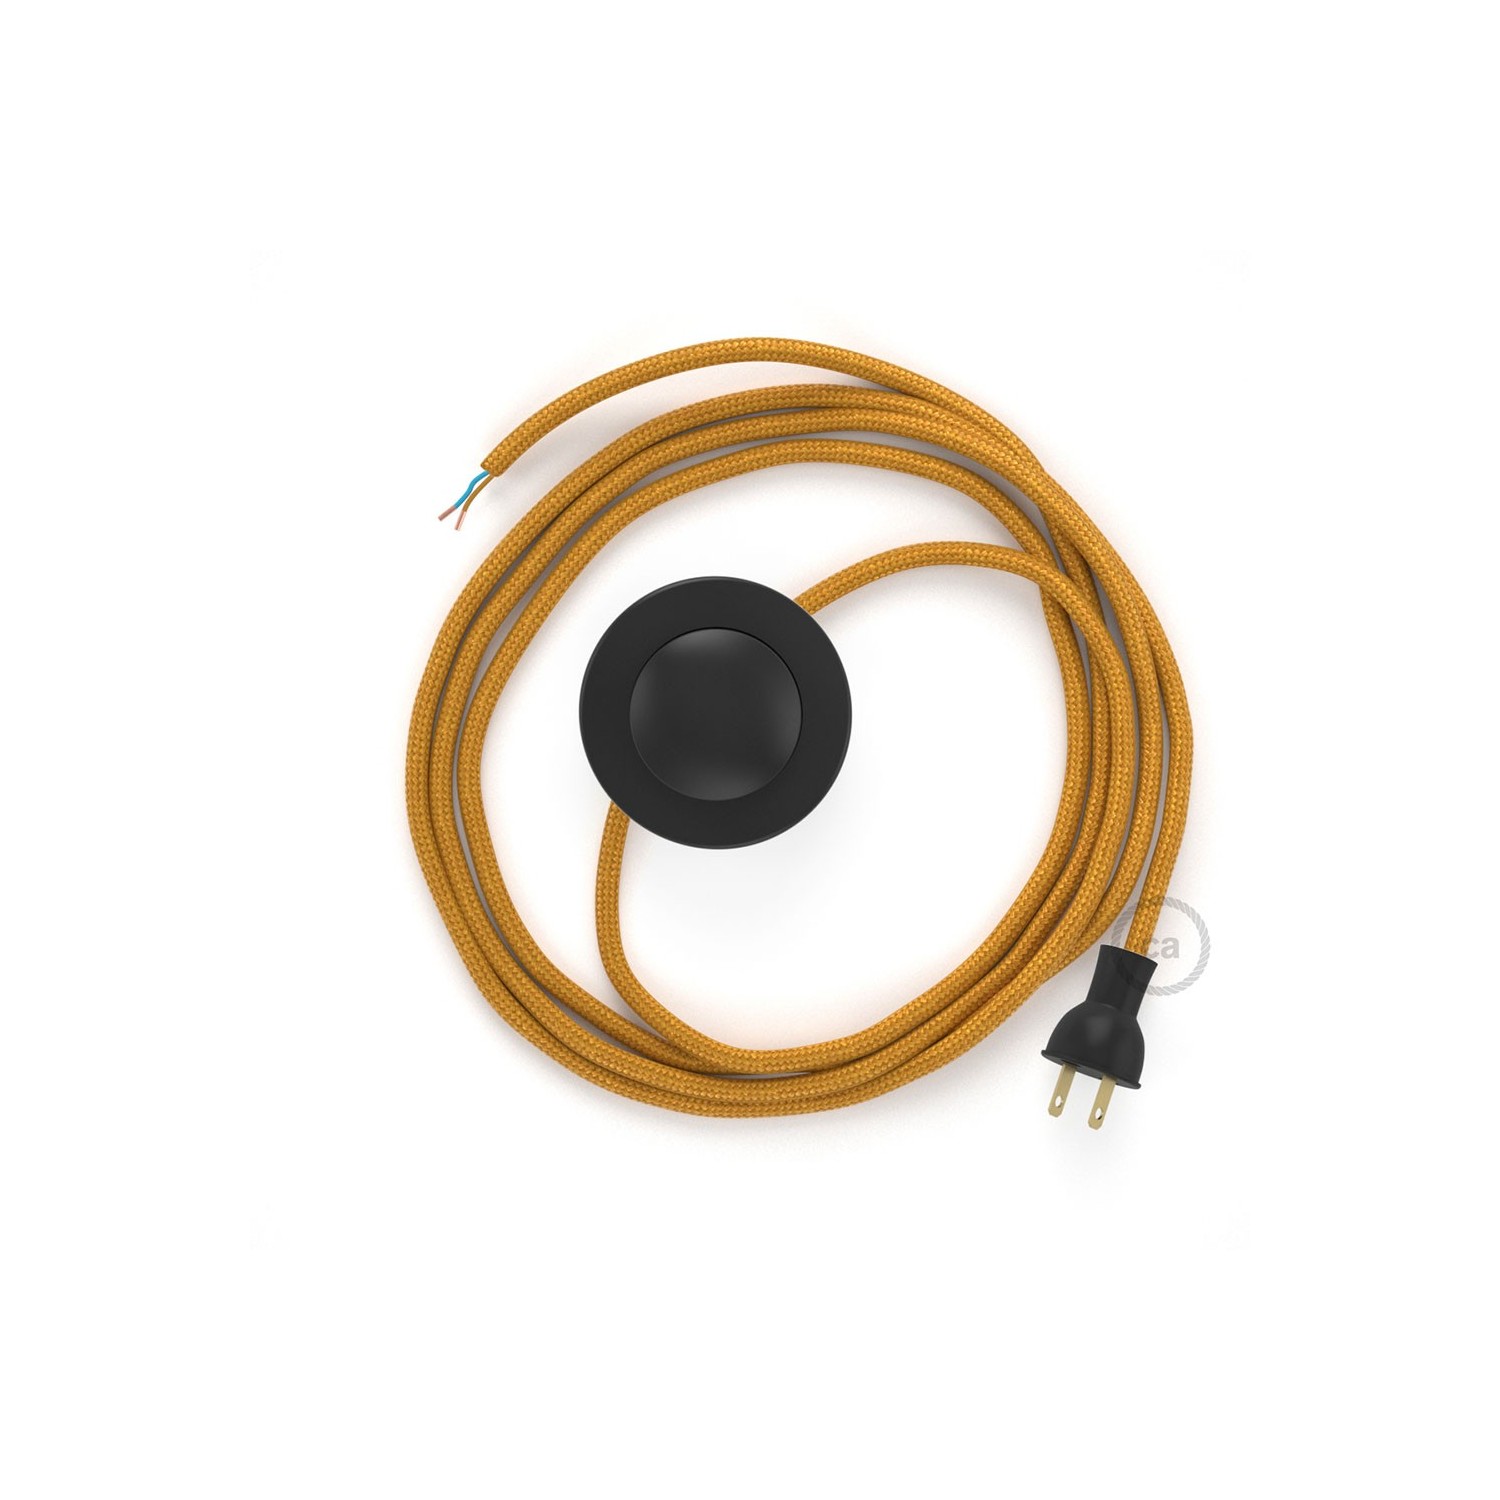 Cableado para lámpara de piso, cable RM05 Rayón Dorado 3 m. Elige tu el color de la clavija y del interruptor!